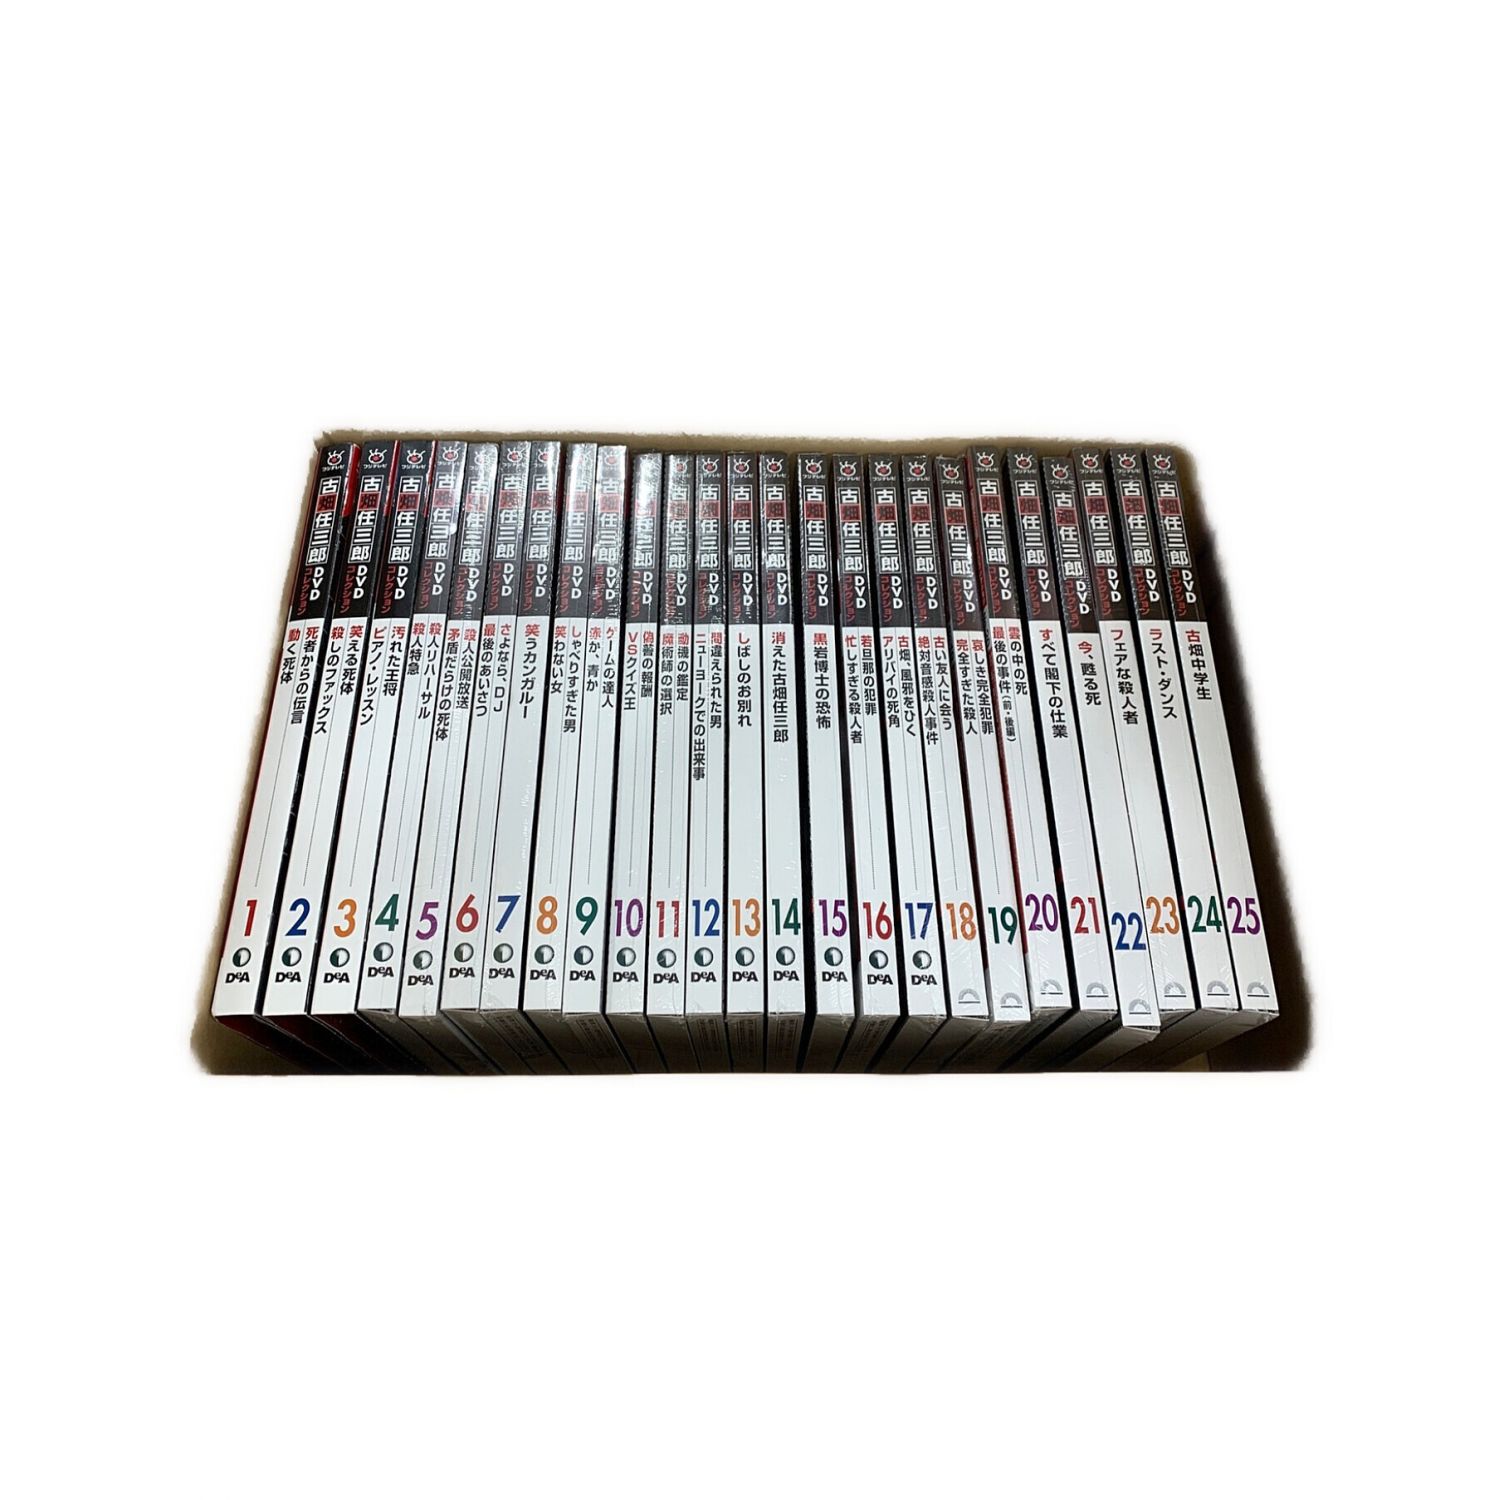 DeAGOSTINI (ディアゴスティーニ) 古畑任三郎DVDコレクション 25巻